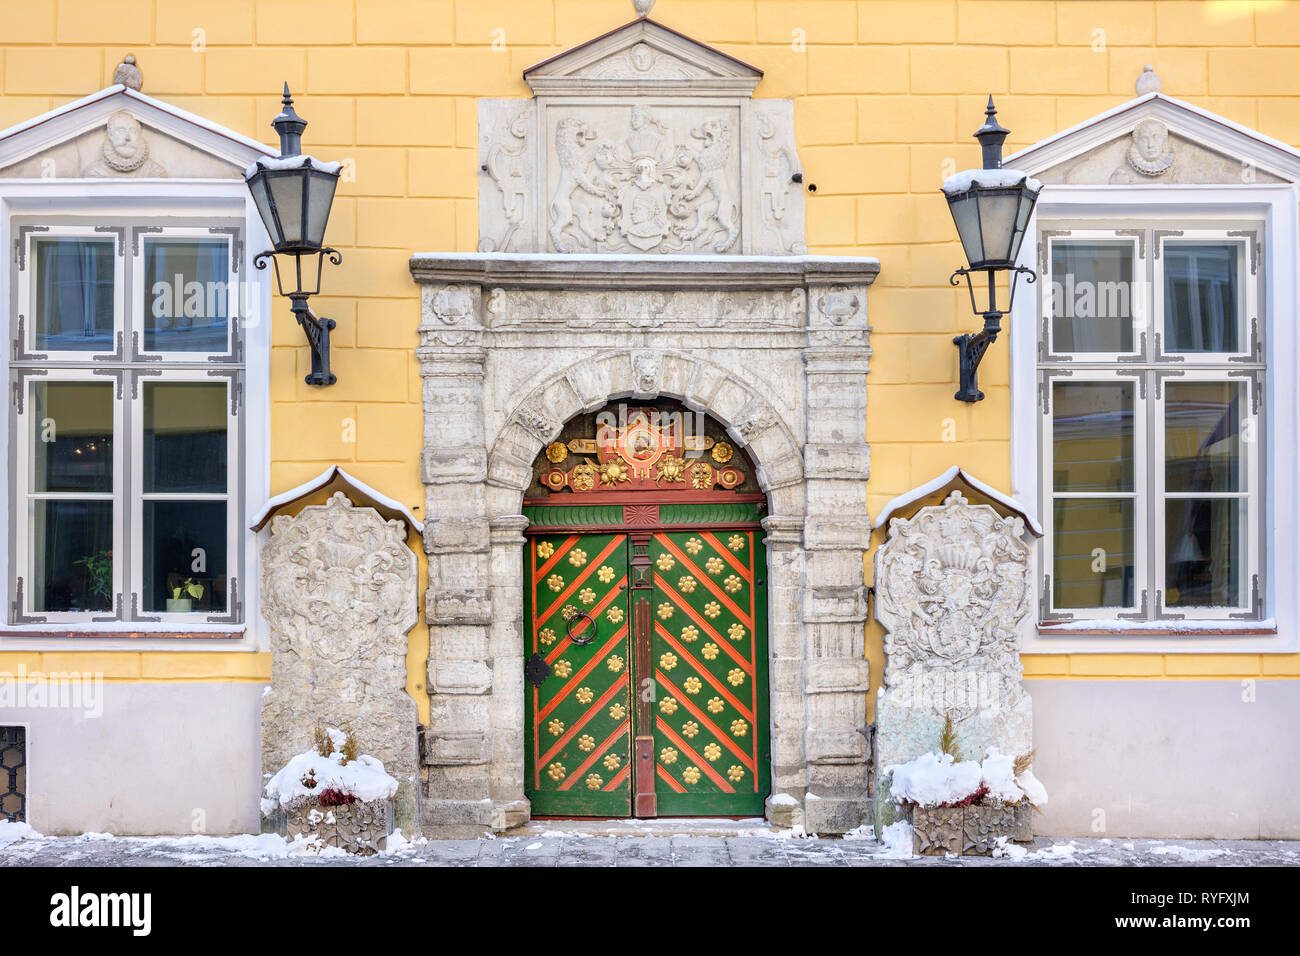 Entrance to Blackheads brotherhood house in old town of Tallinn. Estonia, EU Stock Photo